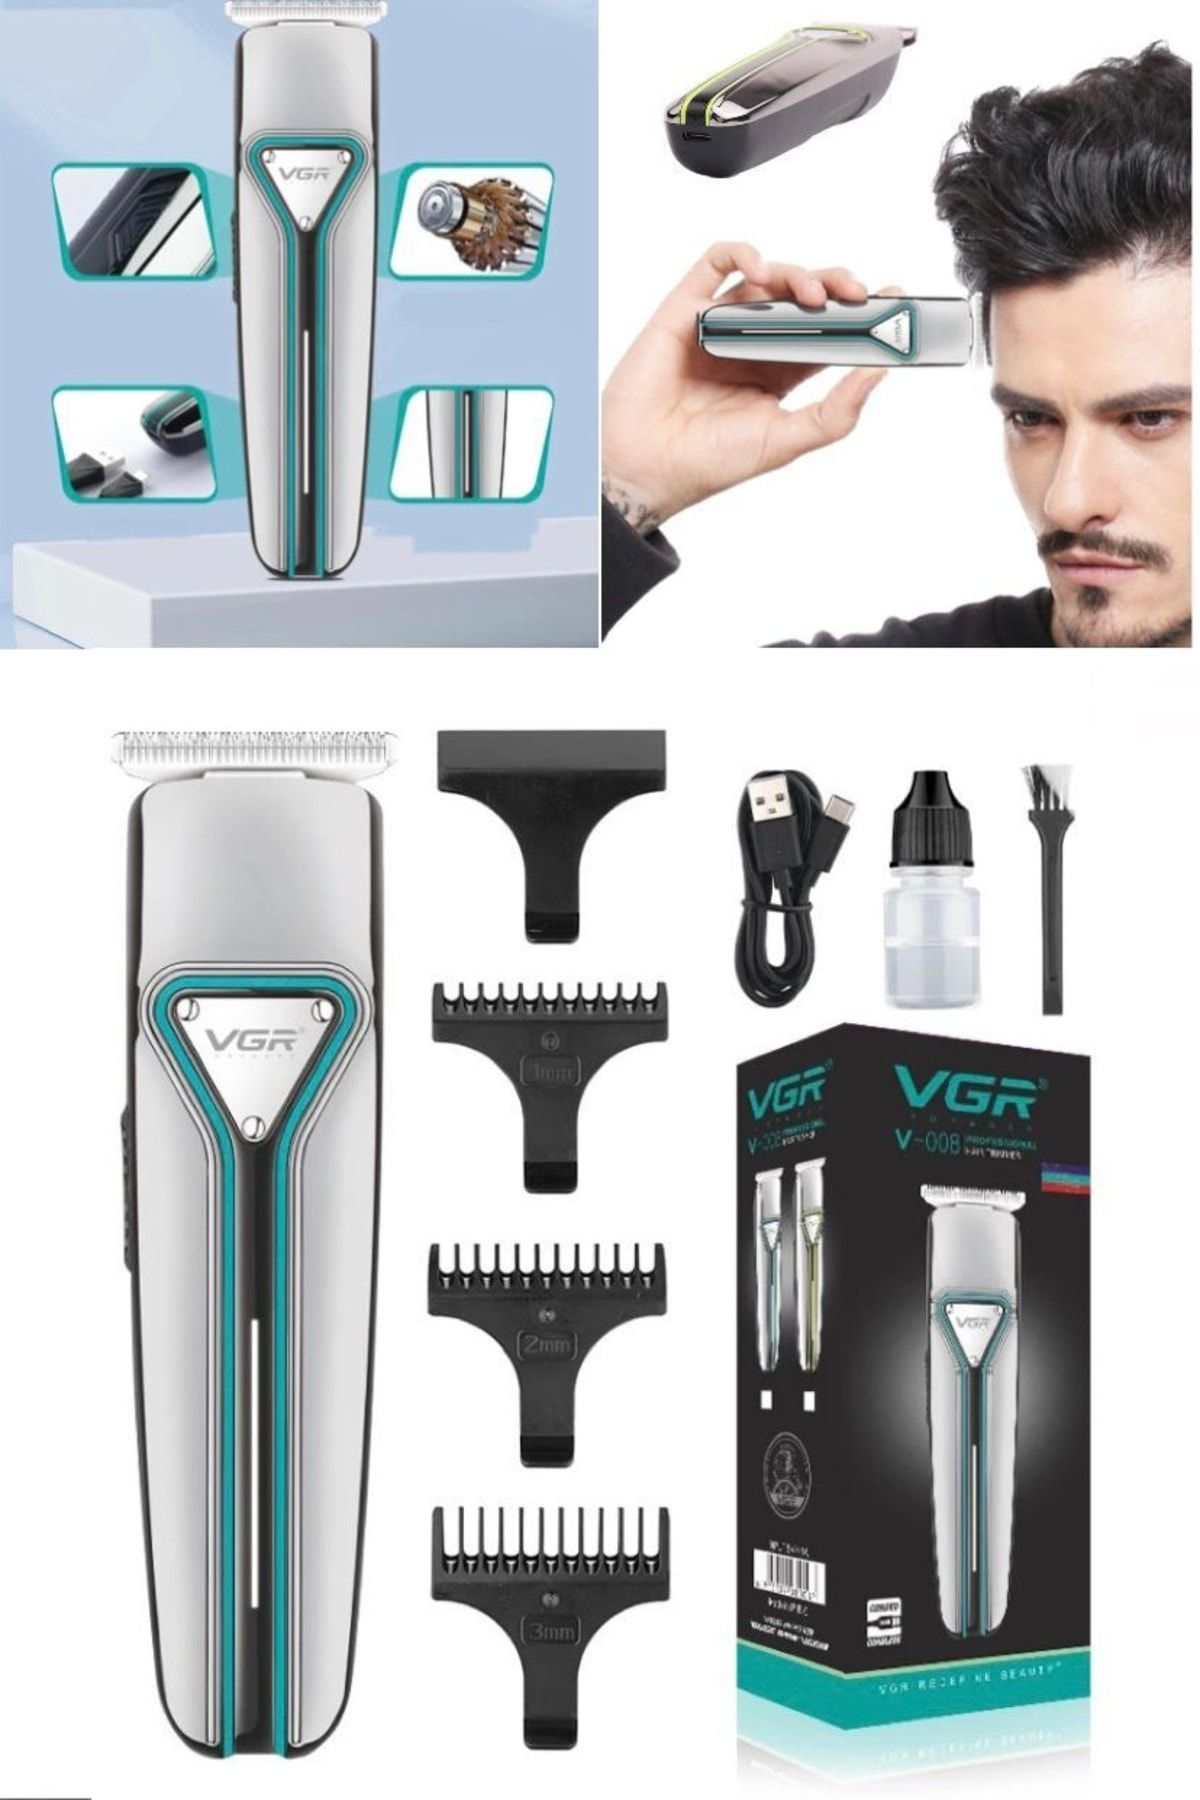 Utelips Saç Sakal Düzleştirici Şekillendirici Tıraş Makinesi Erkekler Için Şarj Edilebilir 3 Başlıklı Tıraş